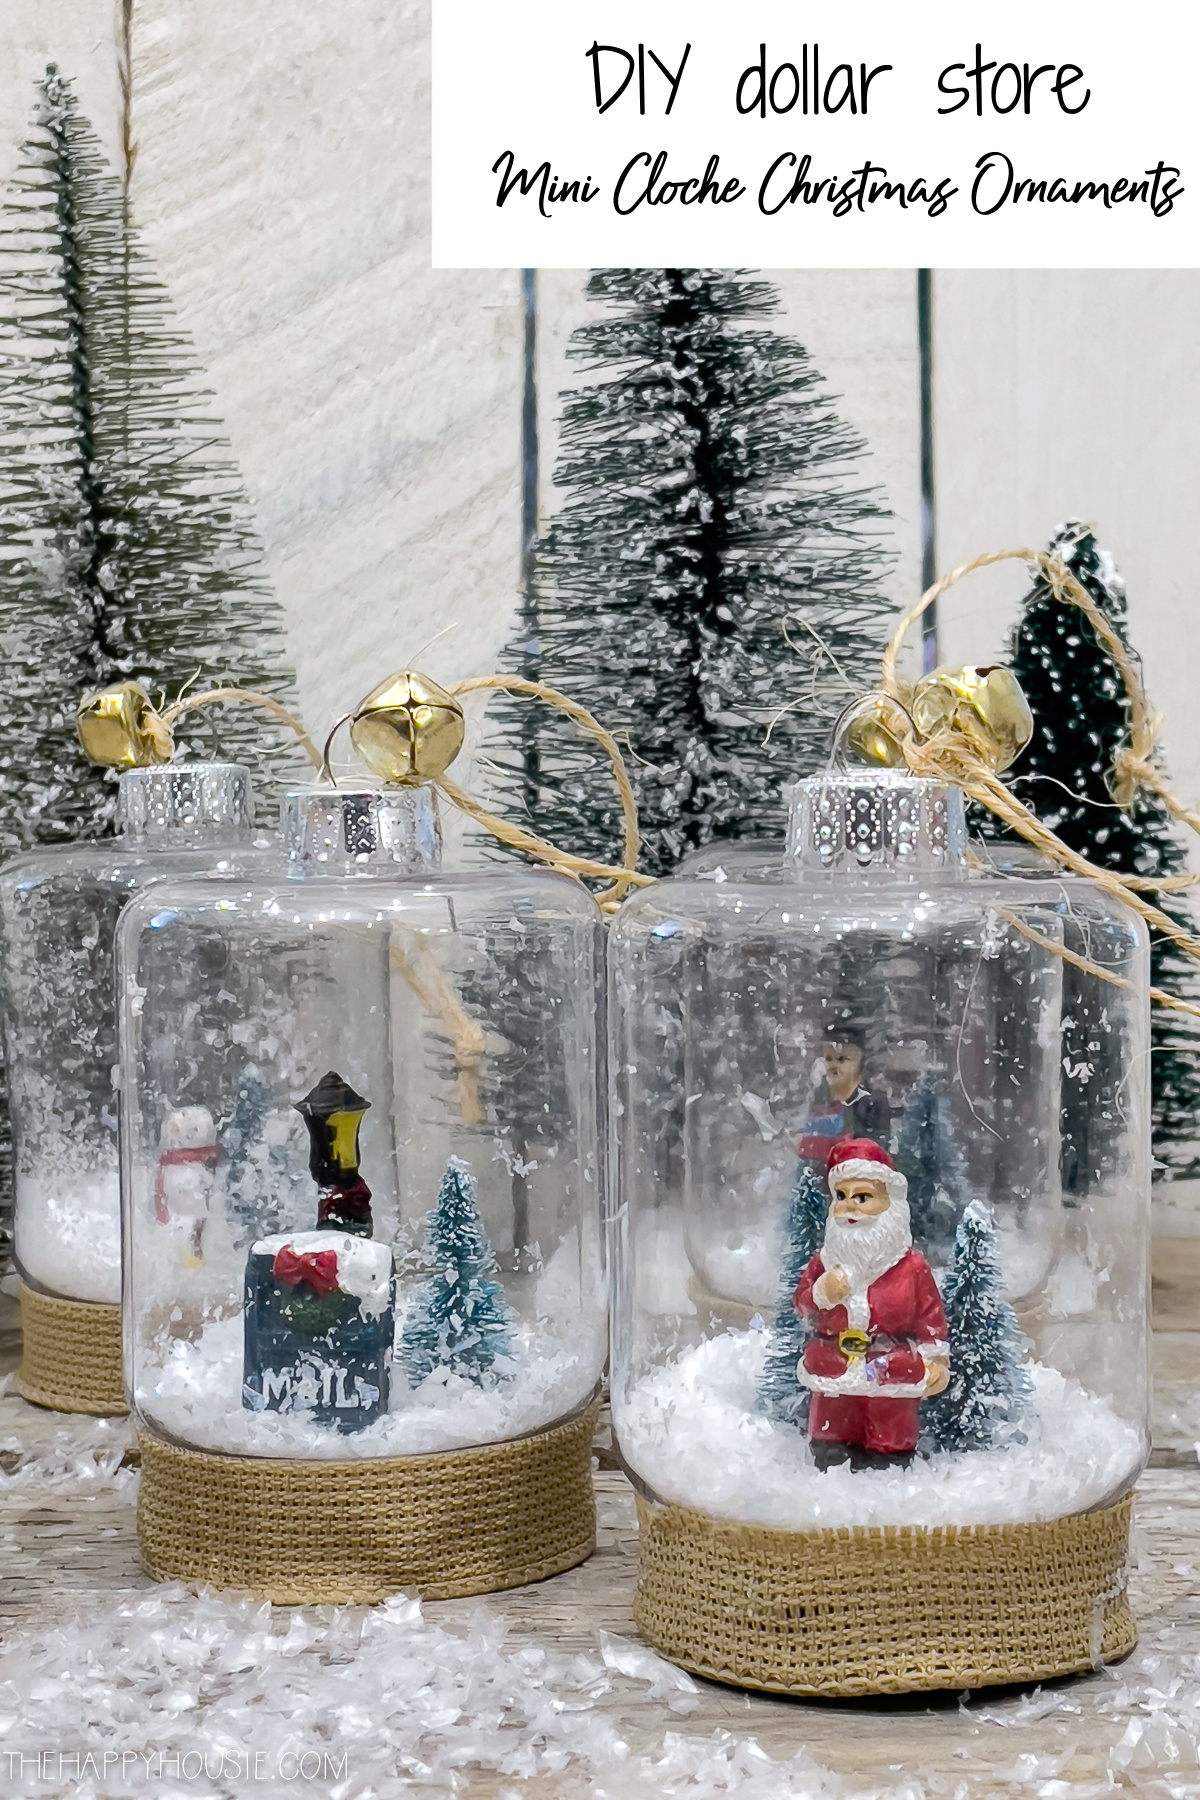 Mini cloche with Santa and snowy scenes inside.